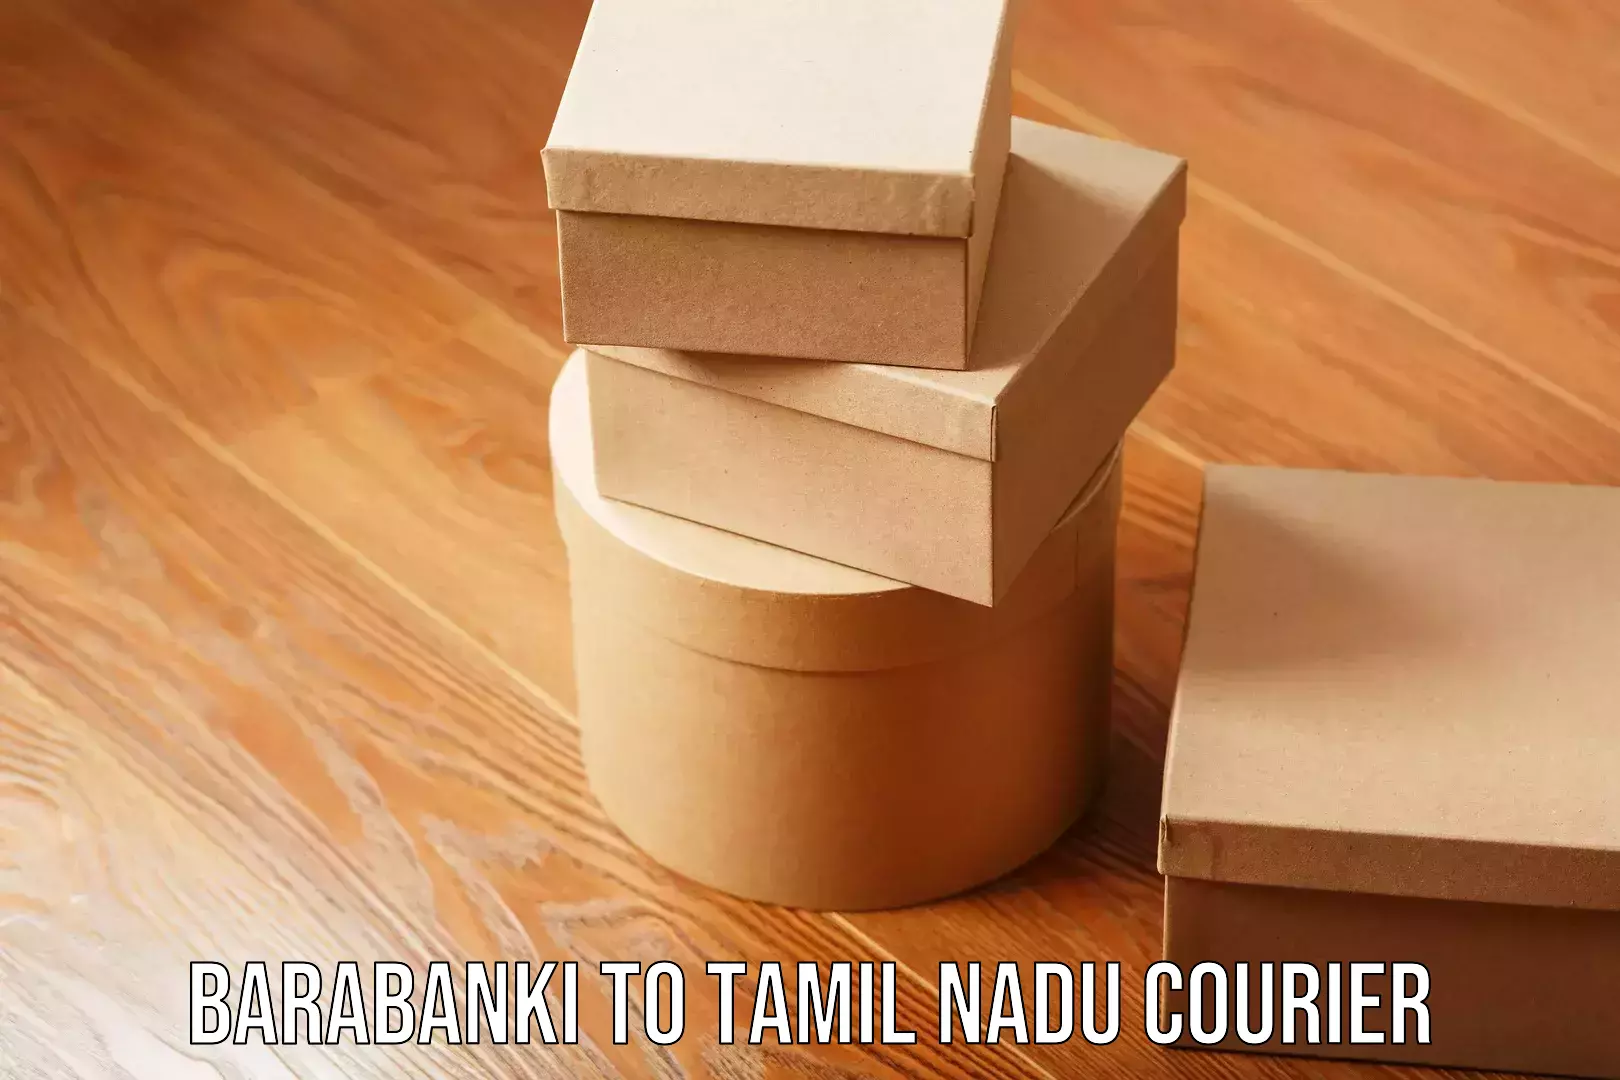 Seamless shipping service Barabanki to Tamil Nadu